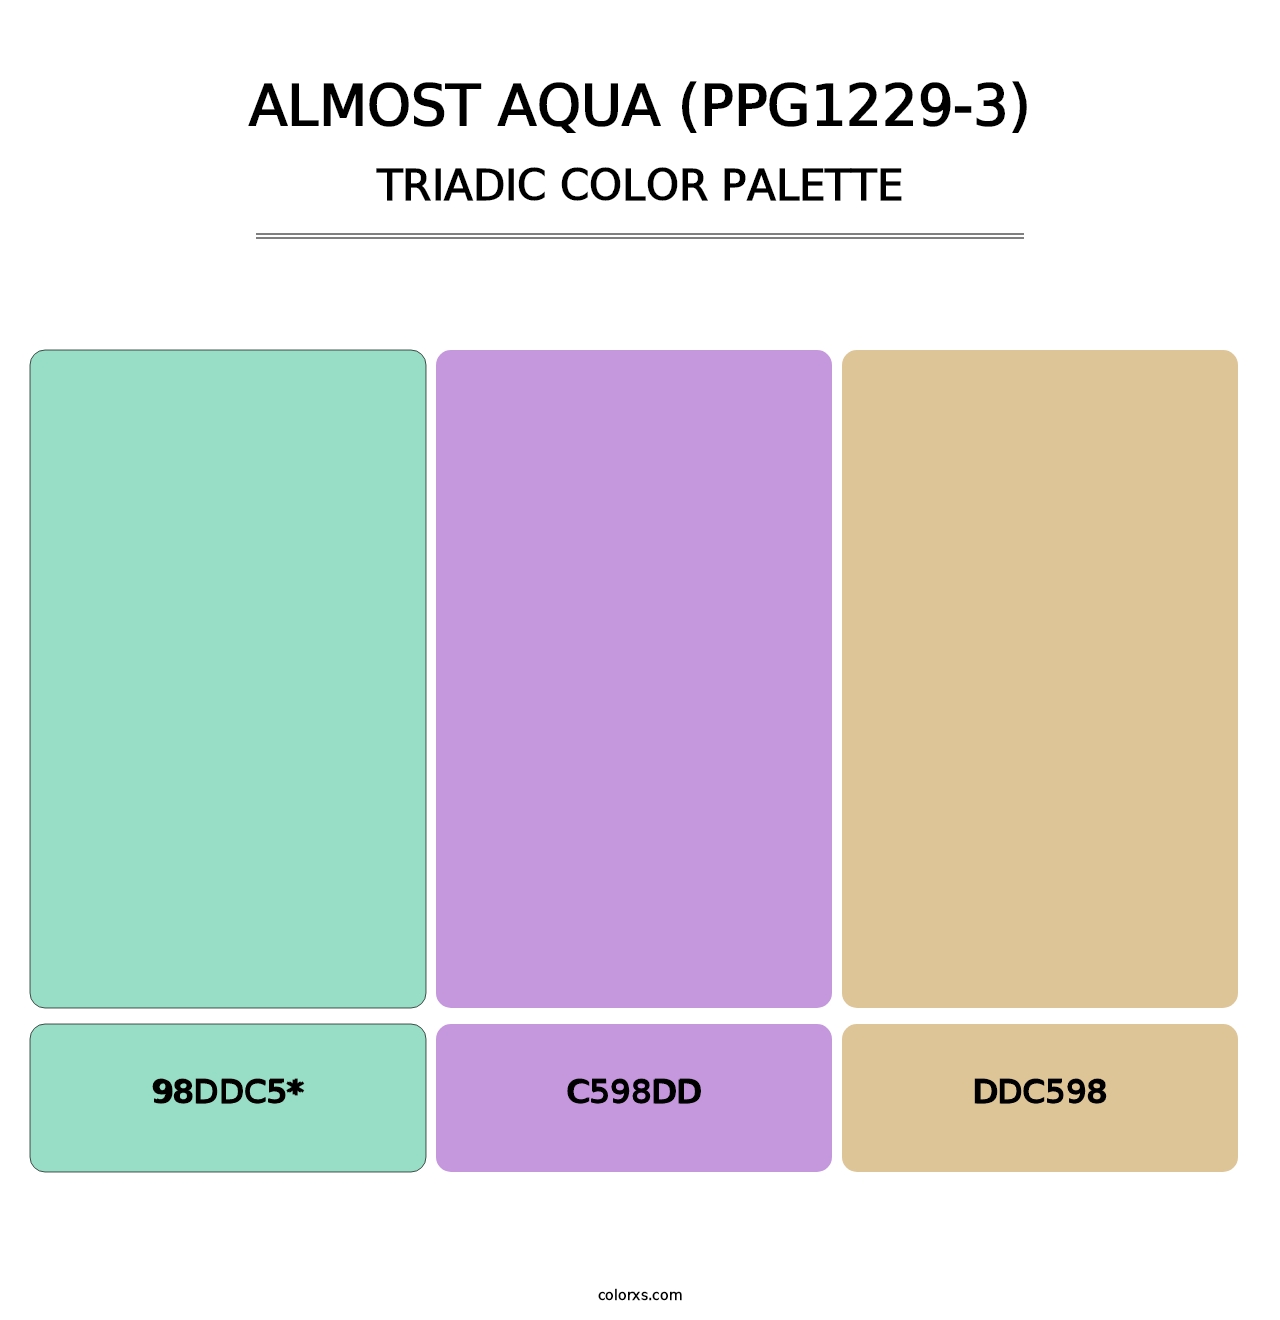 Almost Aqua (PPG1229-3) - Triadic Color Palette